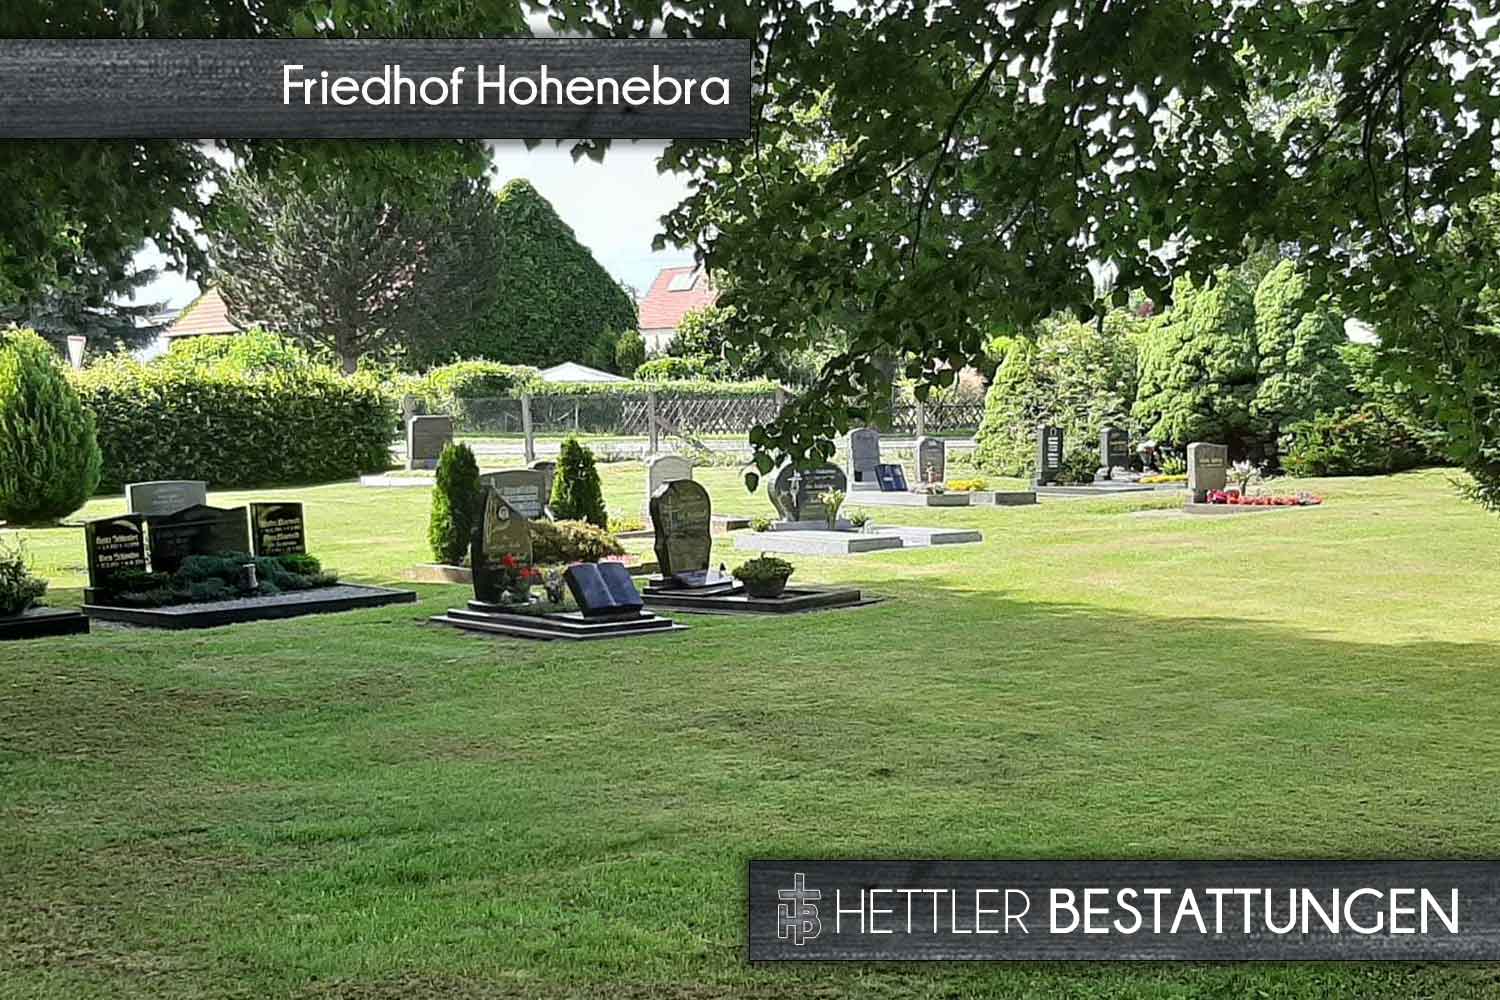 Friedhof in Hohenebra. Ihr Ort des Abschieds mit Hettler Bestattungen.